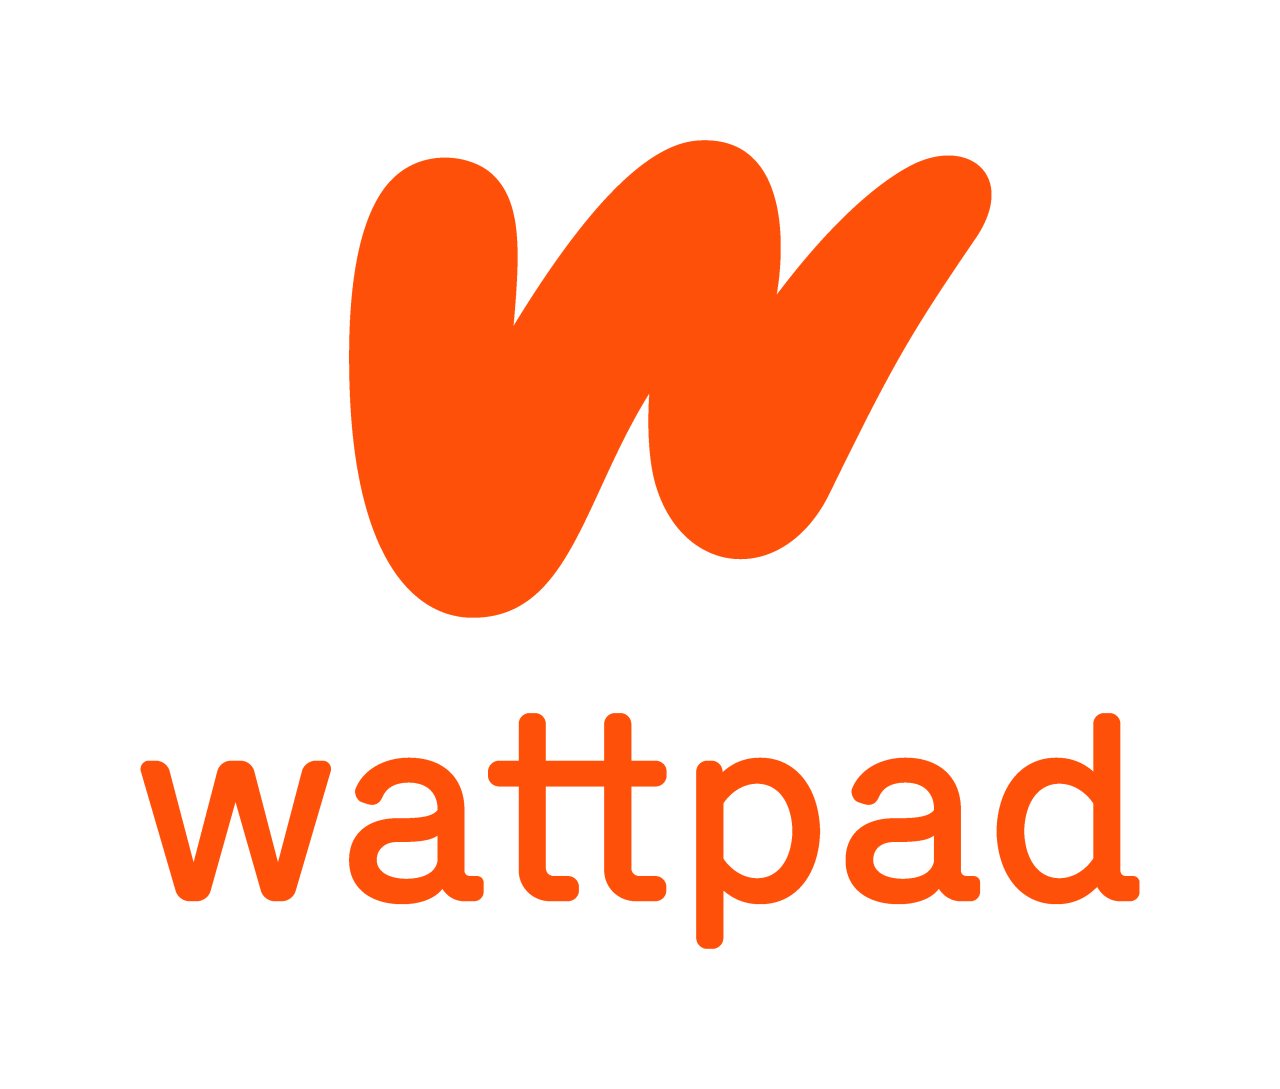 Wattpad logo (Naver)